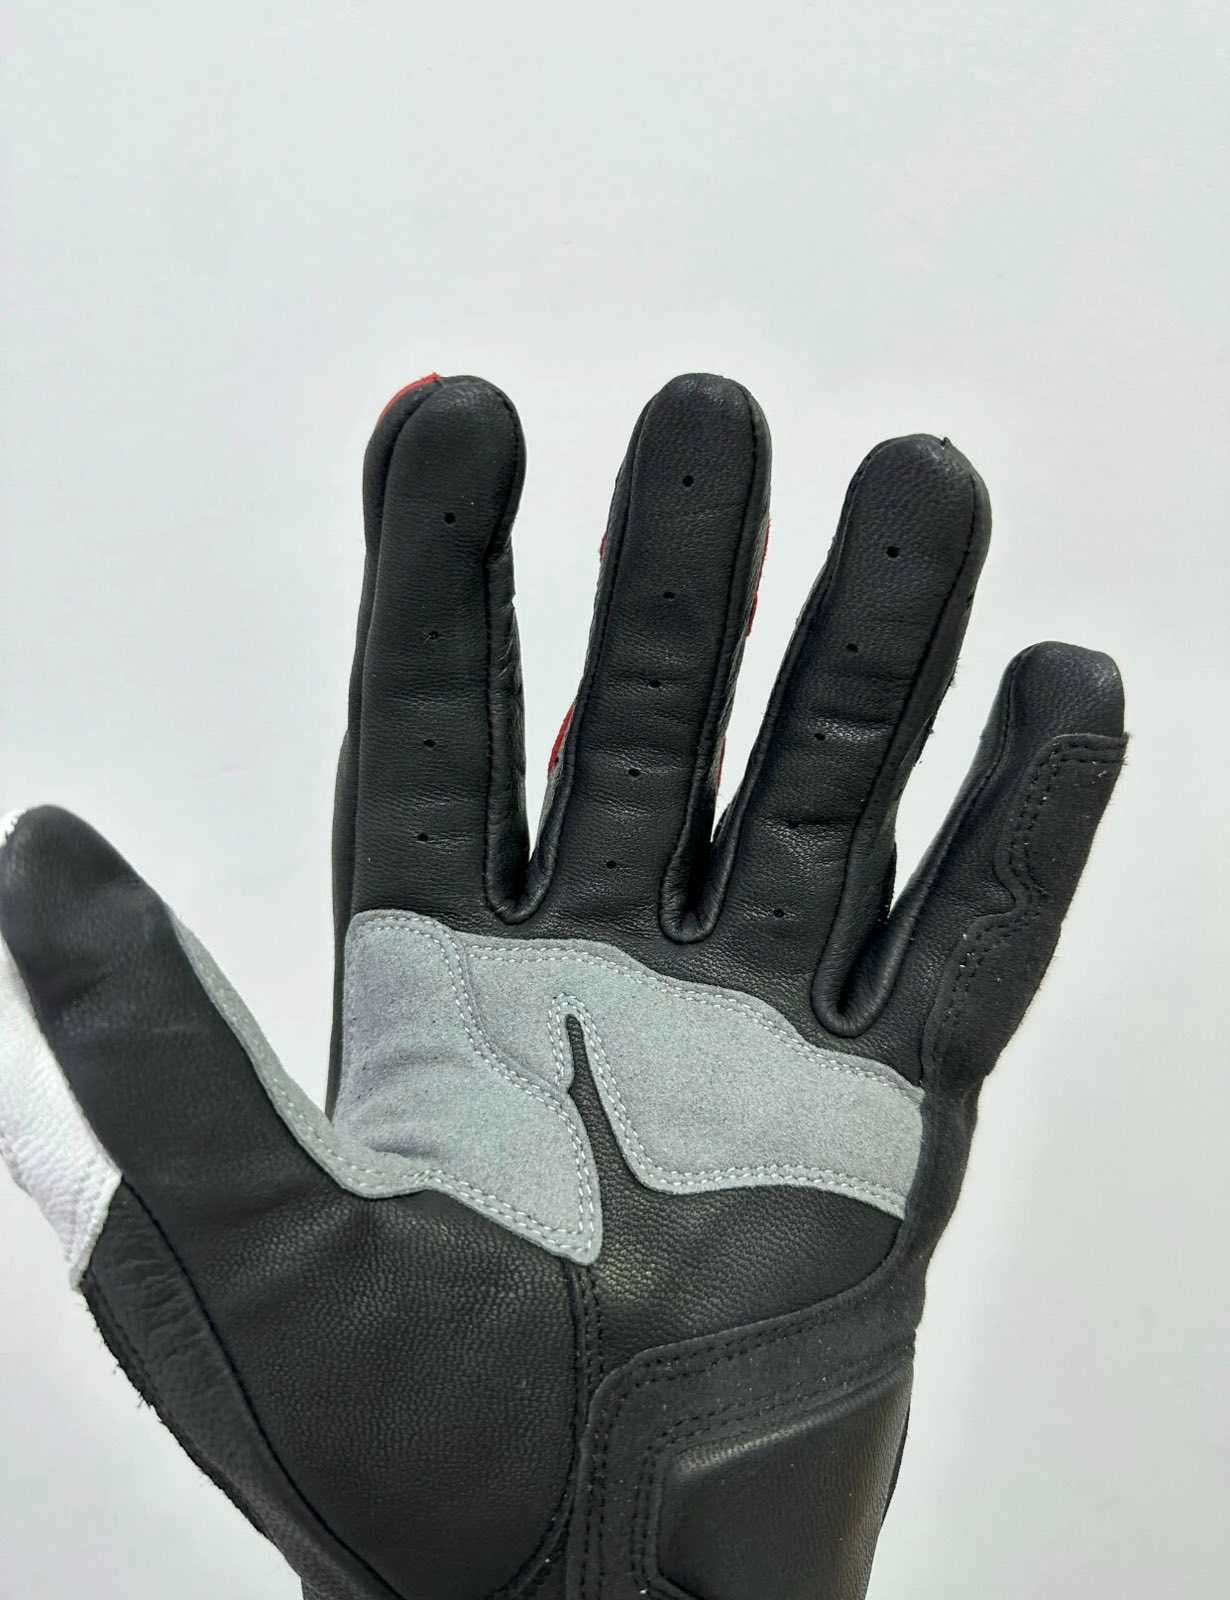 Нови! Мъжки/Дамски 4 сезонни кожени мото ръкавици с протектори Ducati